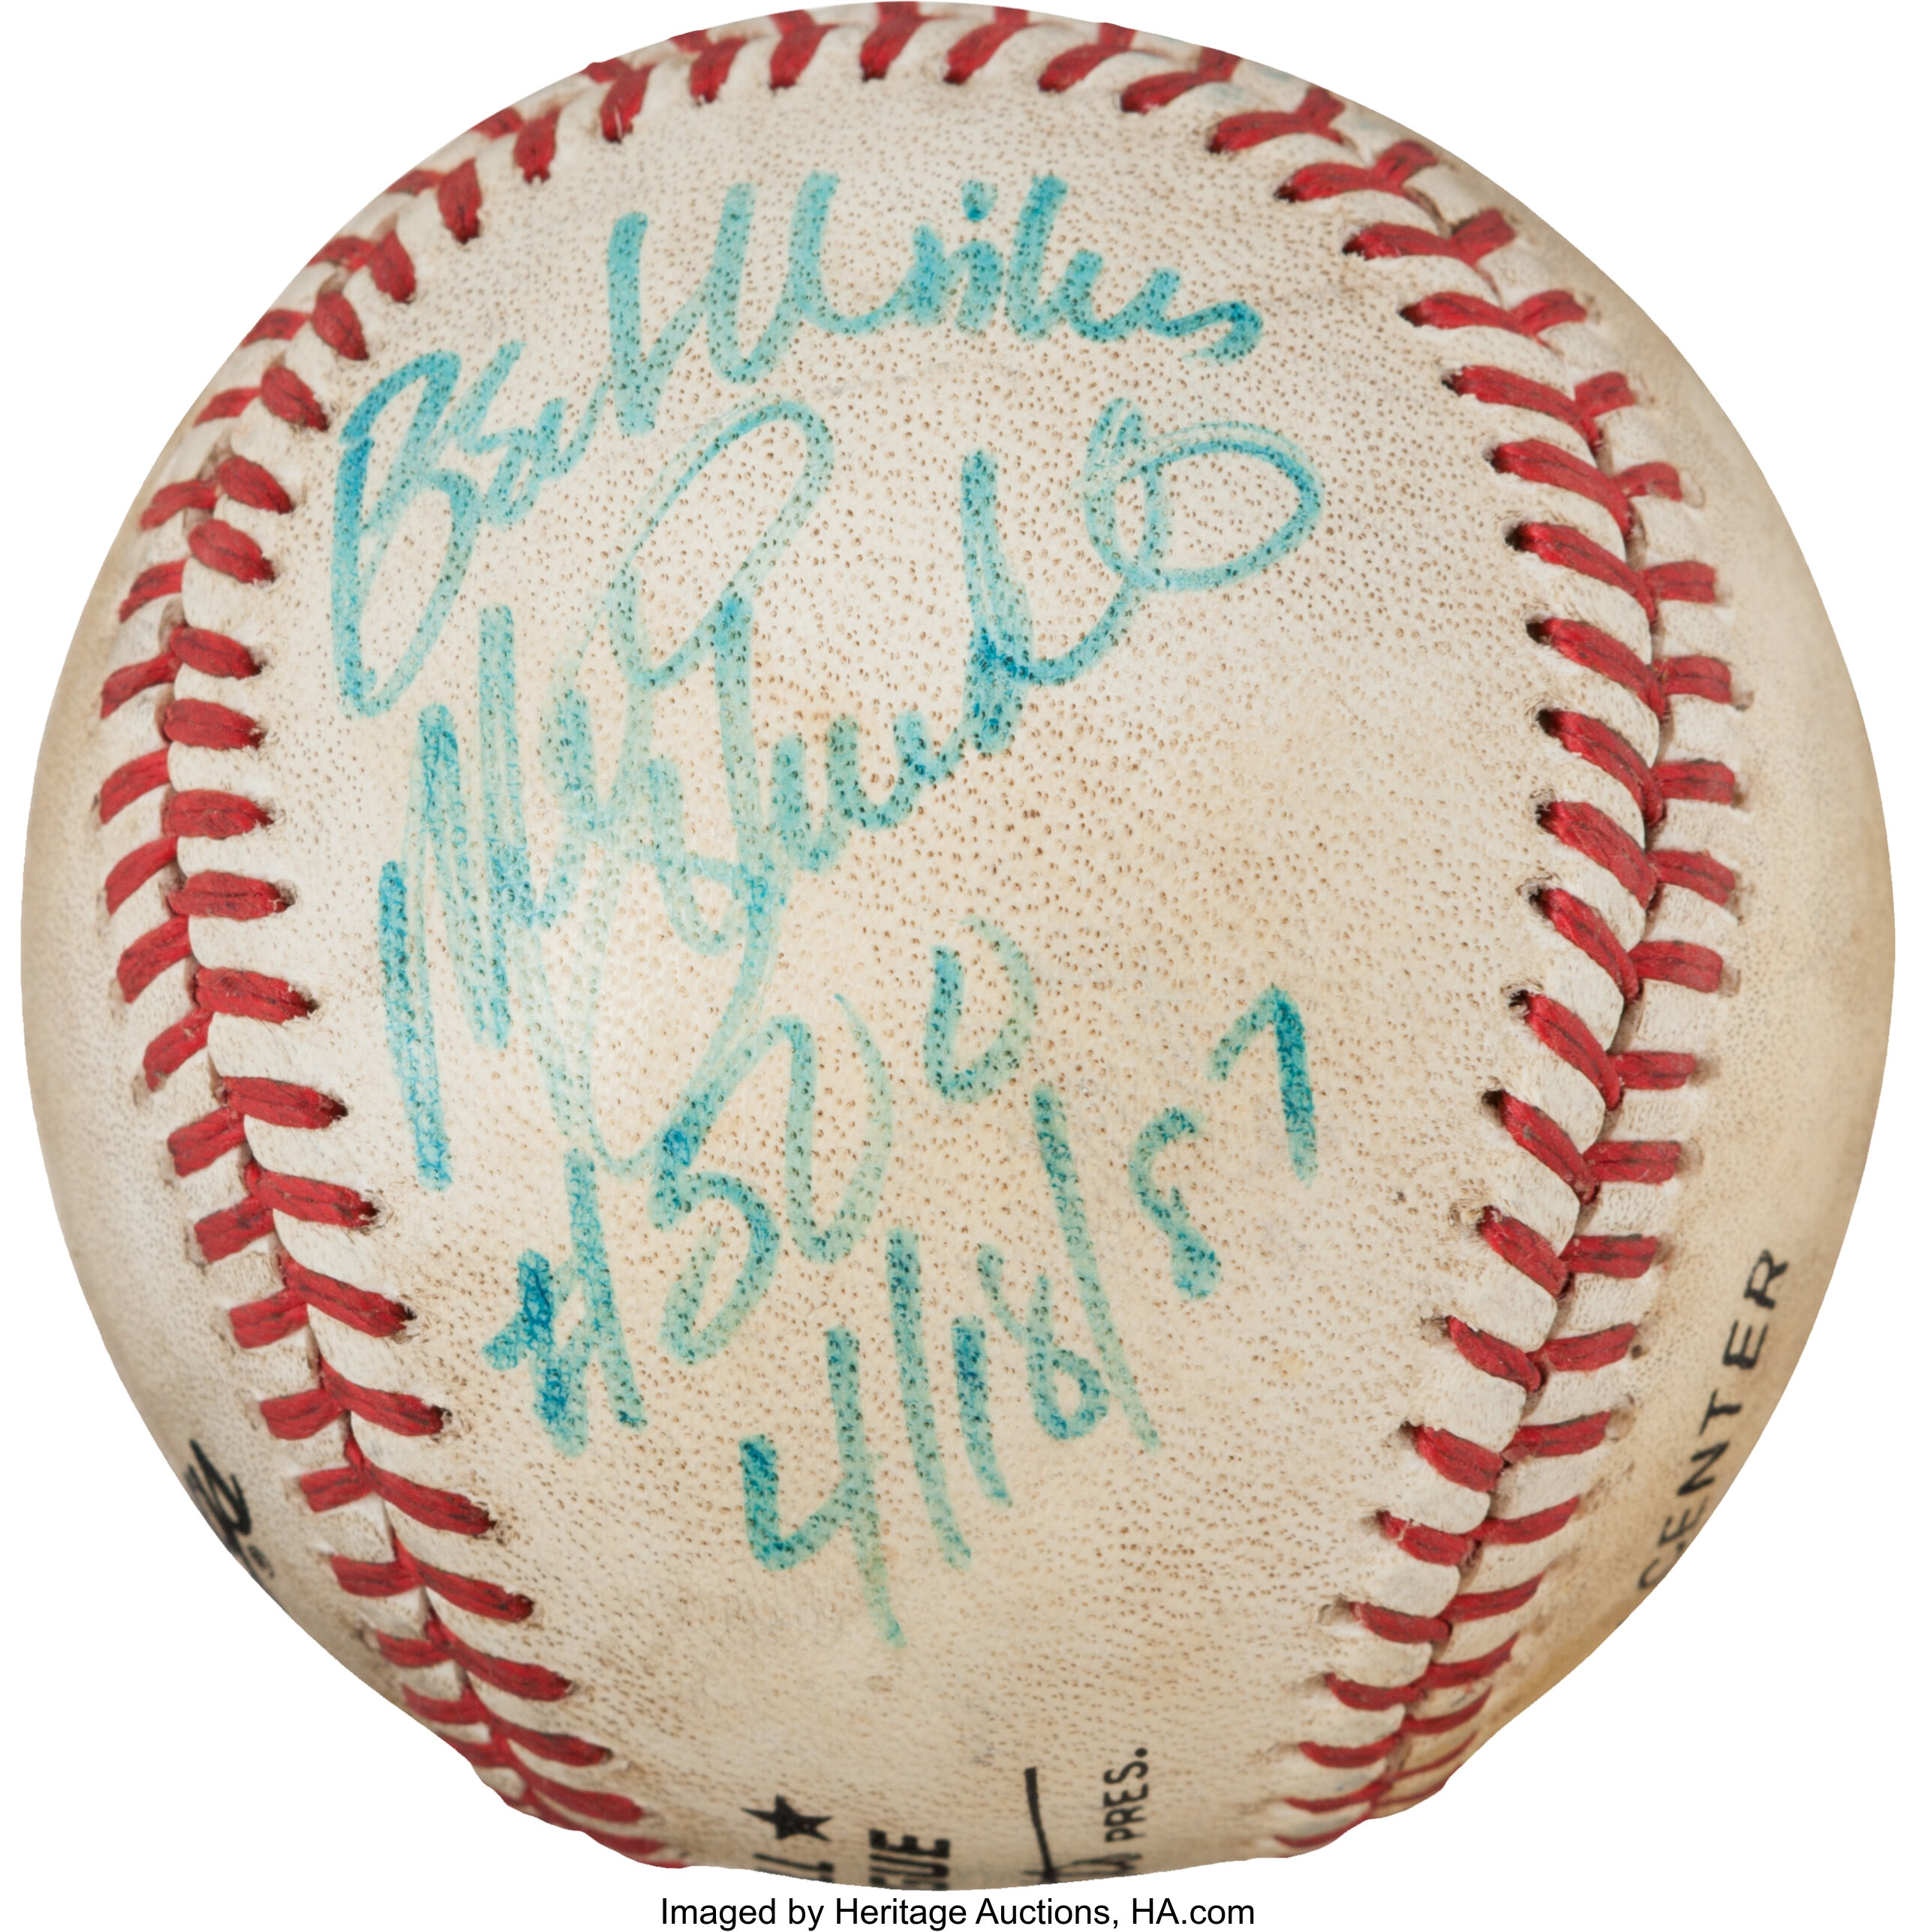 Mike Schmidt - Baseball Egg